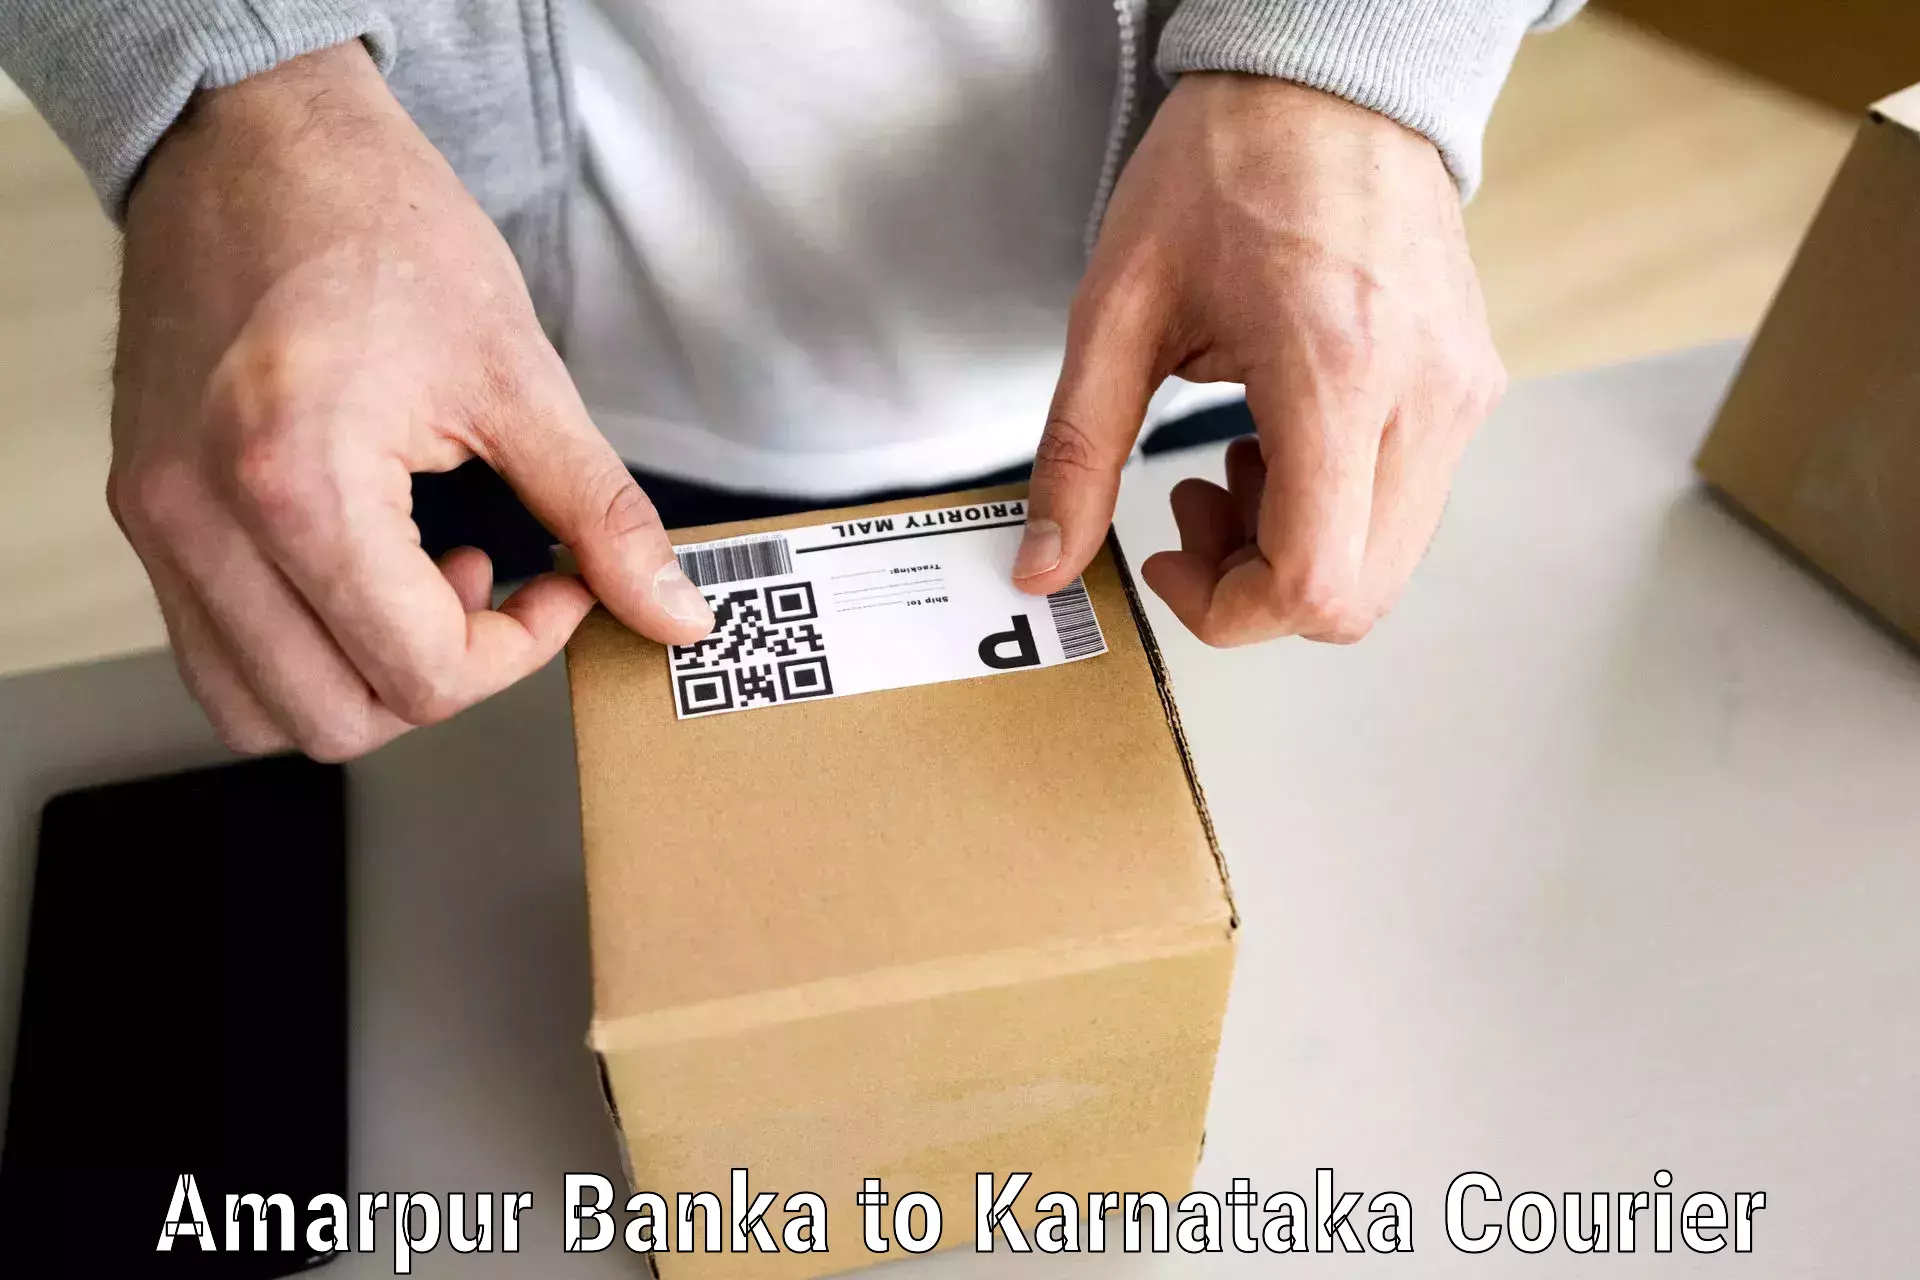 Household moving assistance Amarpur Banka to Karnataka